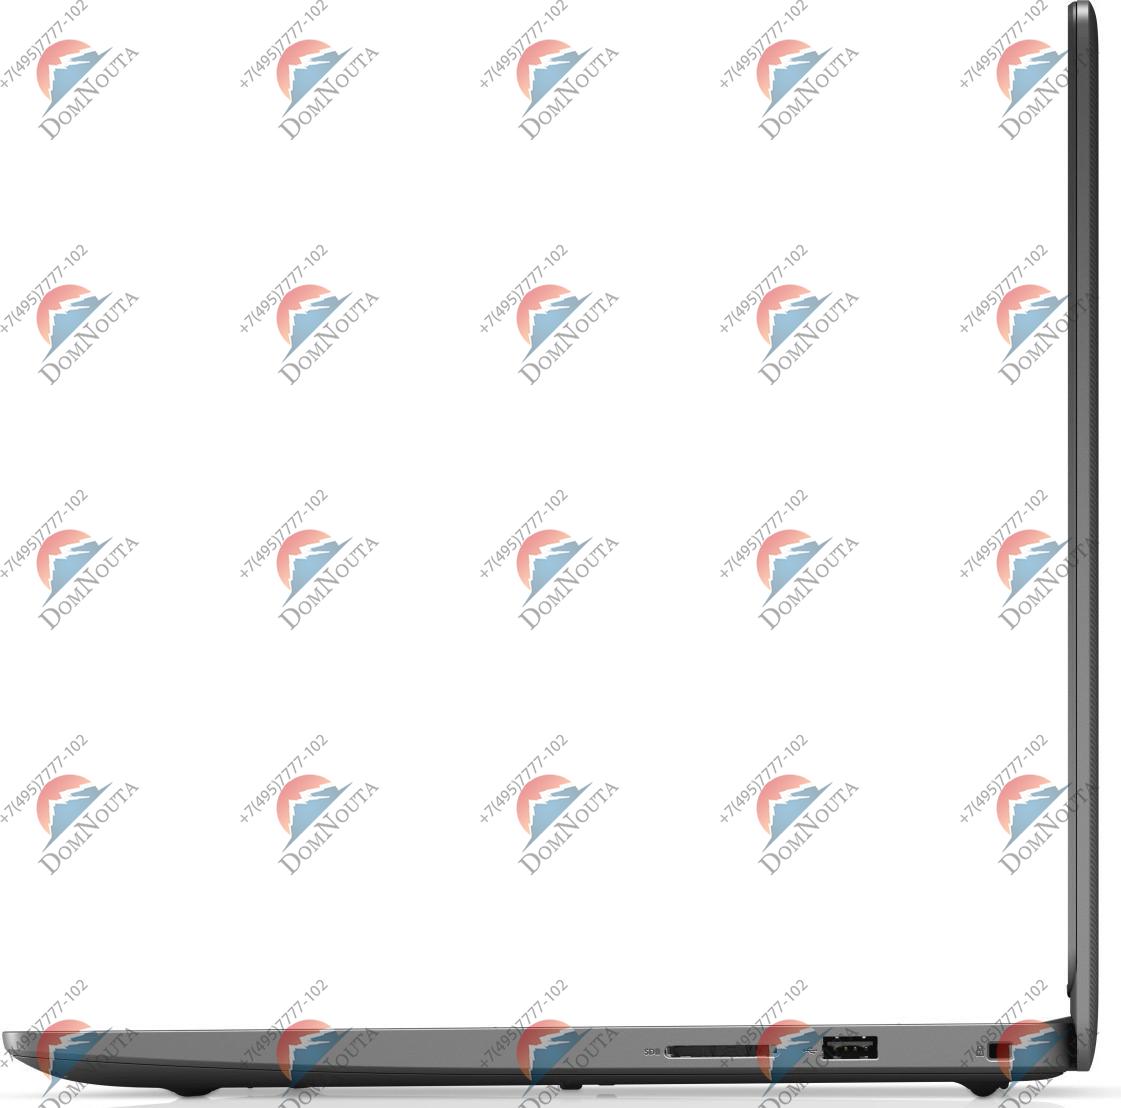 Ноутбук Dell Vostro 3400